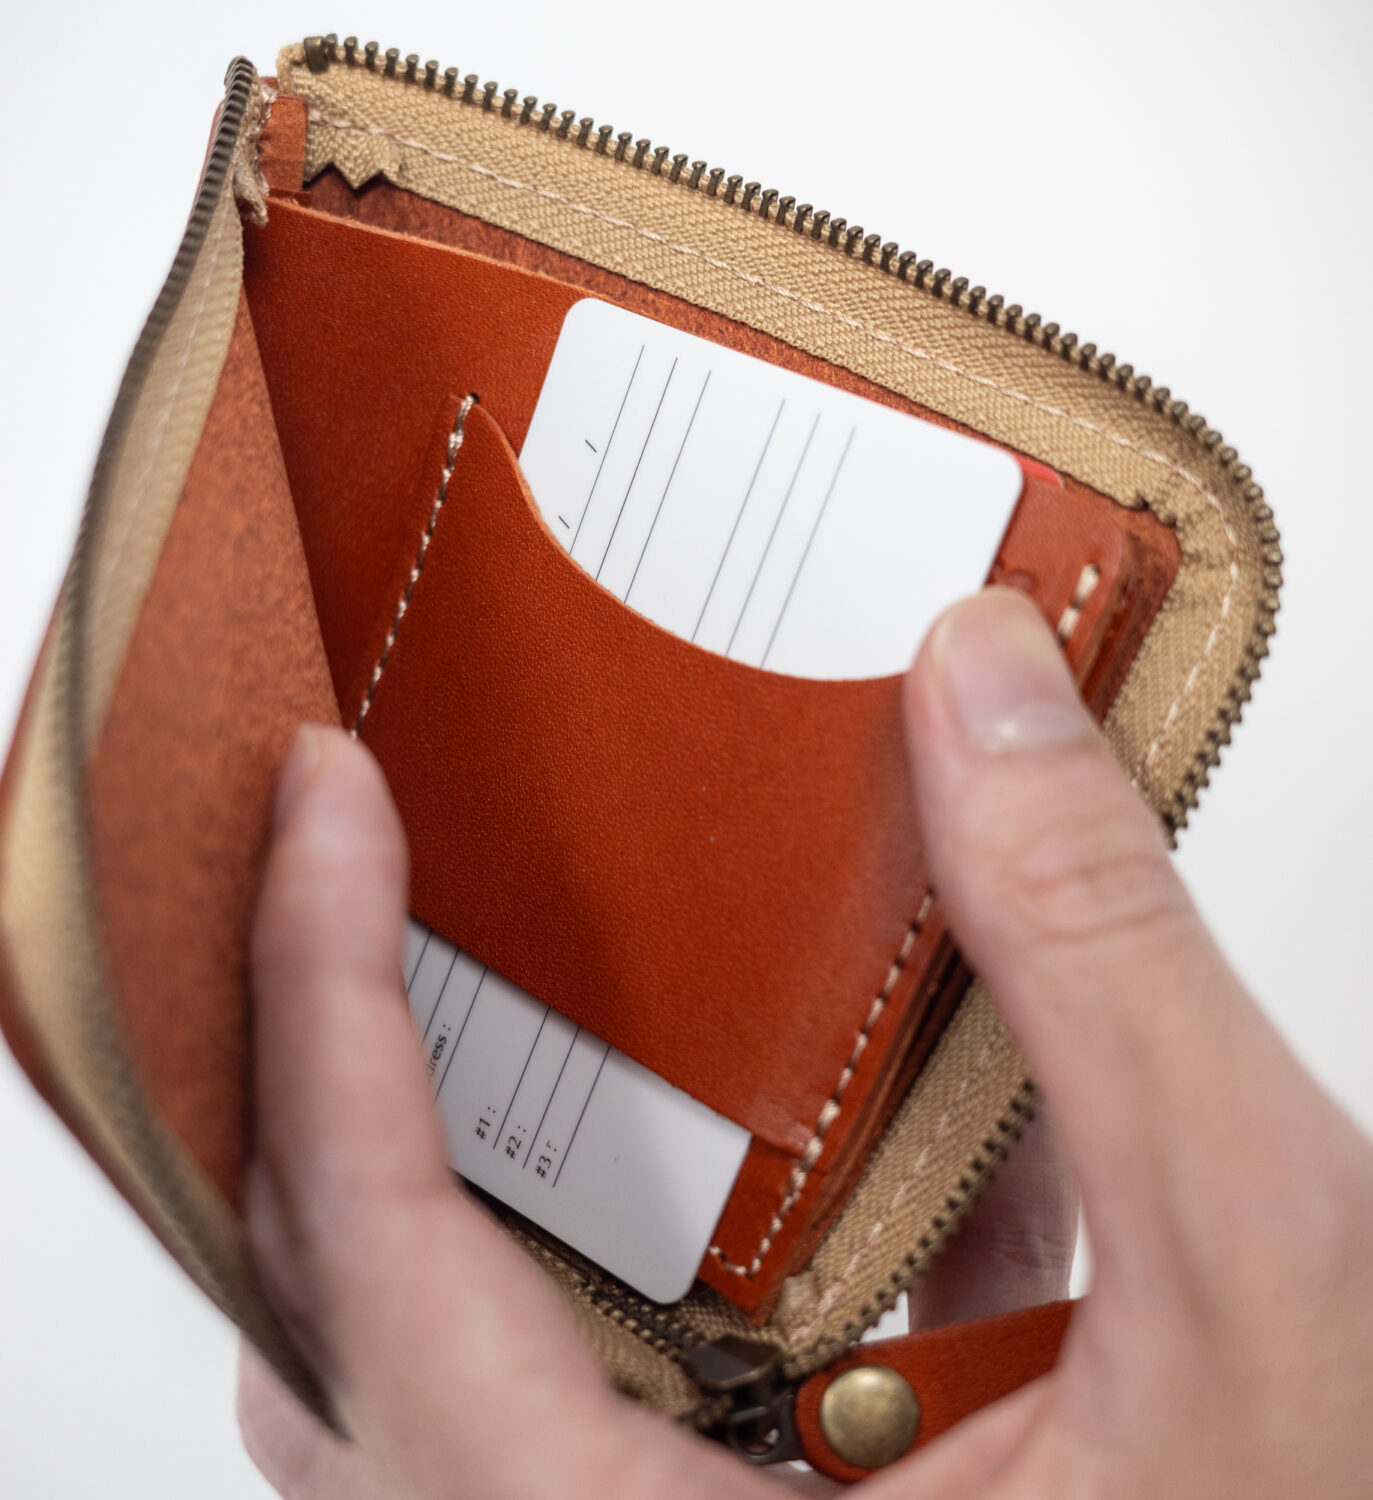 ネイティブ クリエイションのL字ファスナー薄型ミニ財布の内側ポケットのカードを入れた様子